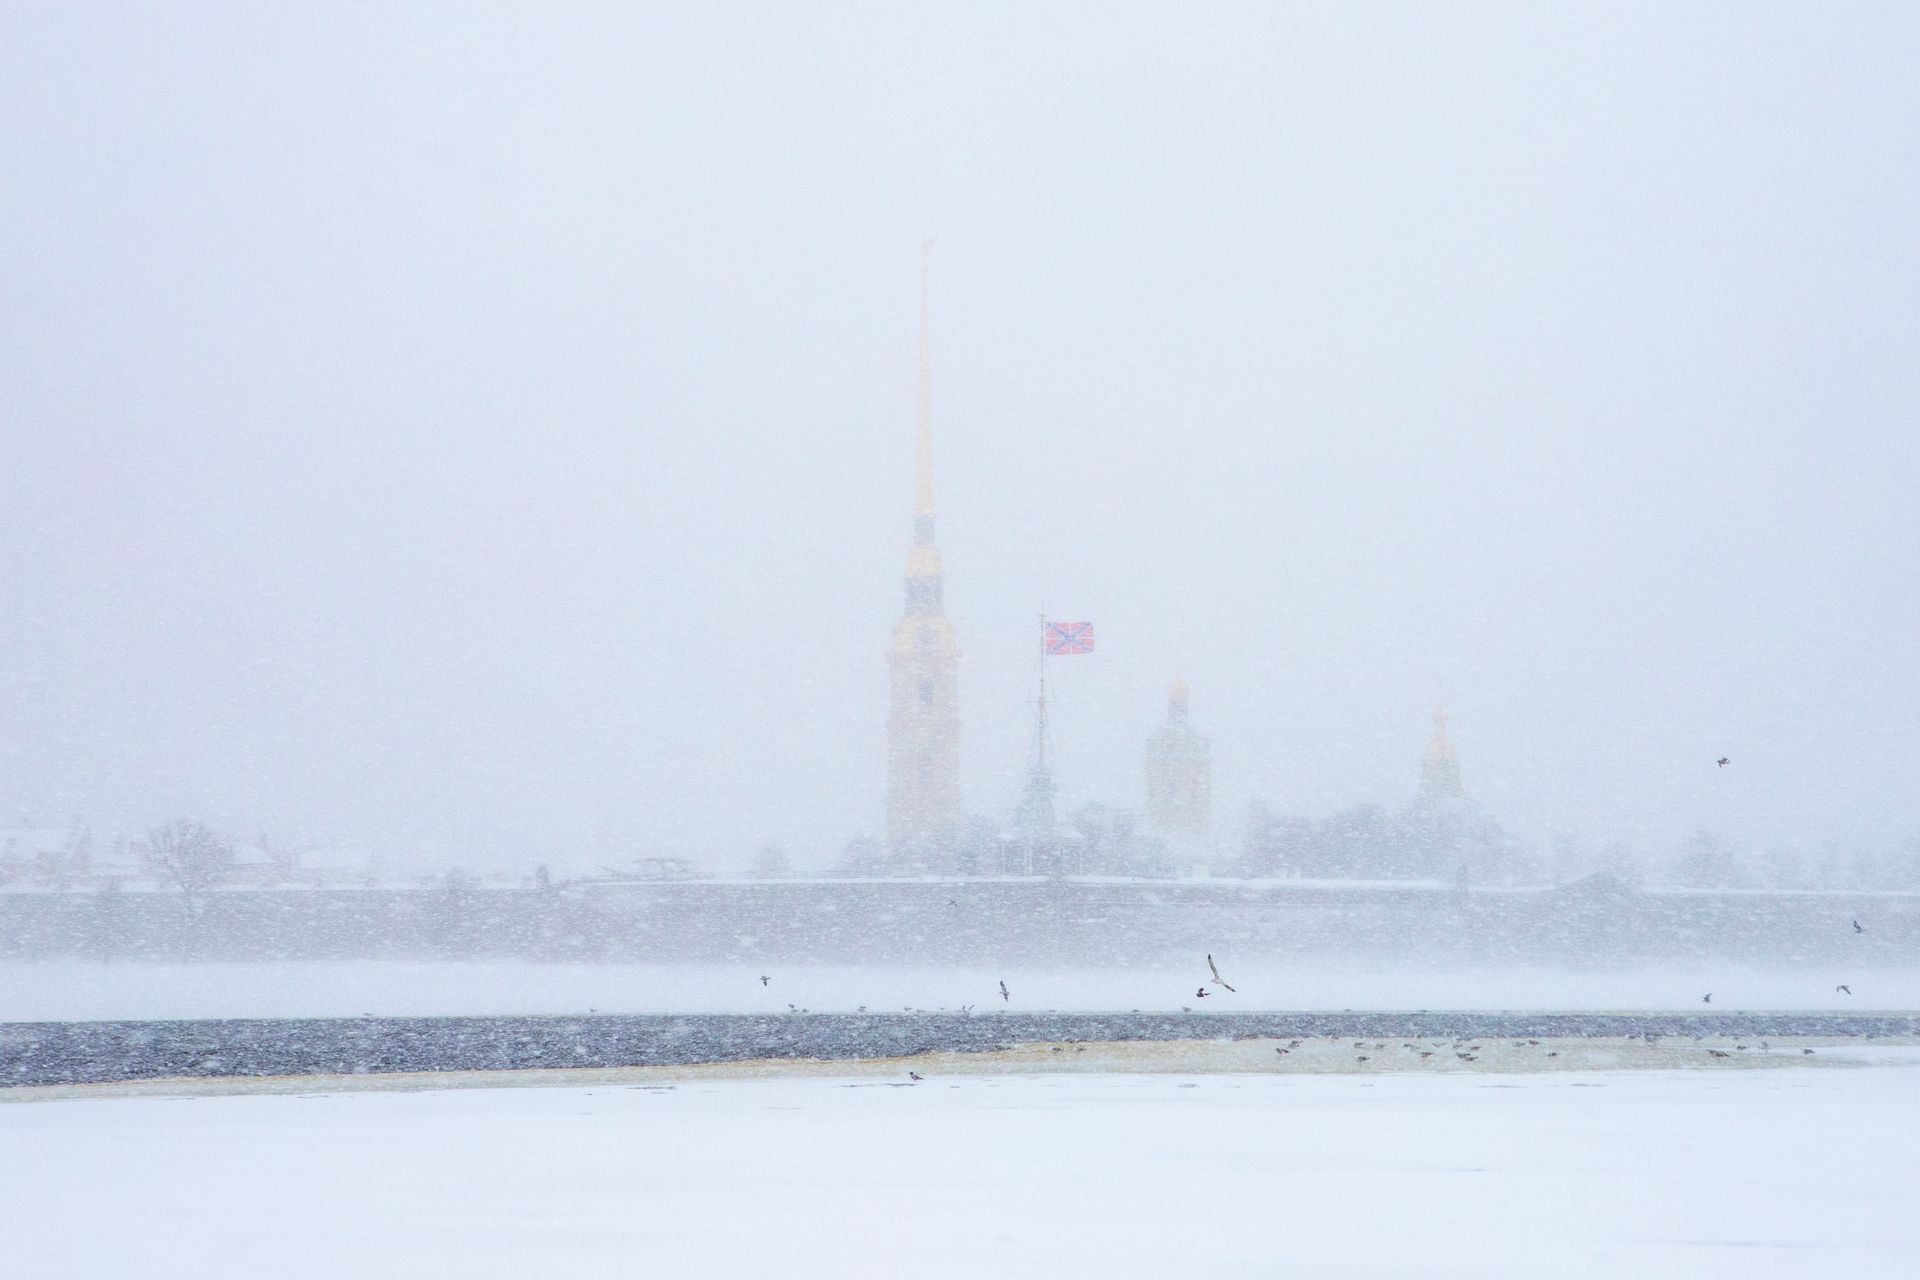 снегопад в санкт петербурге